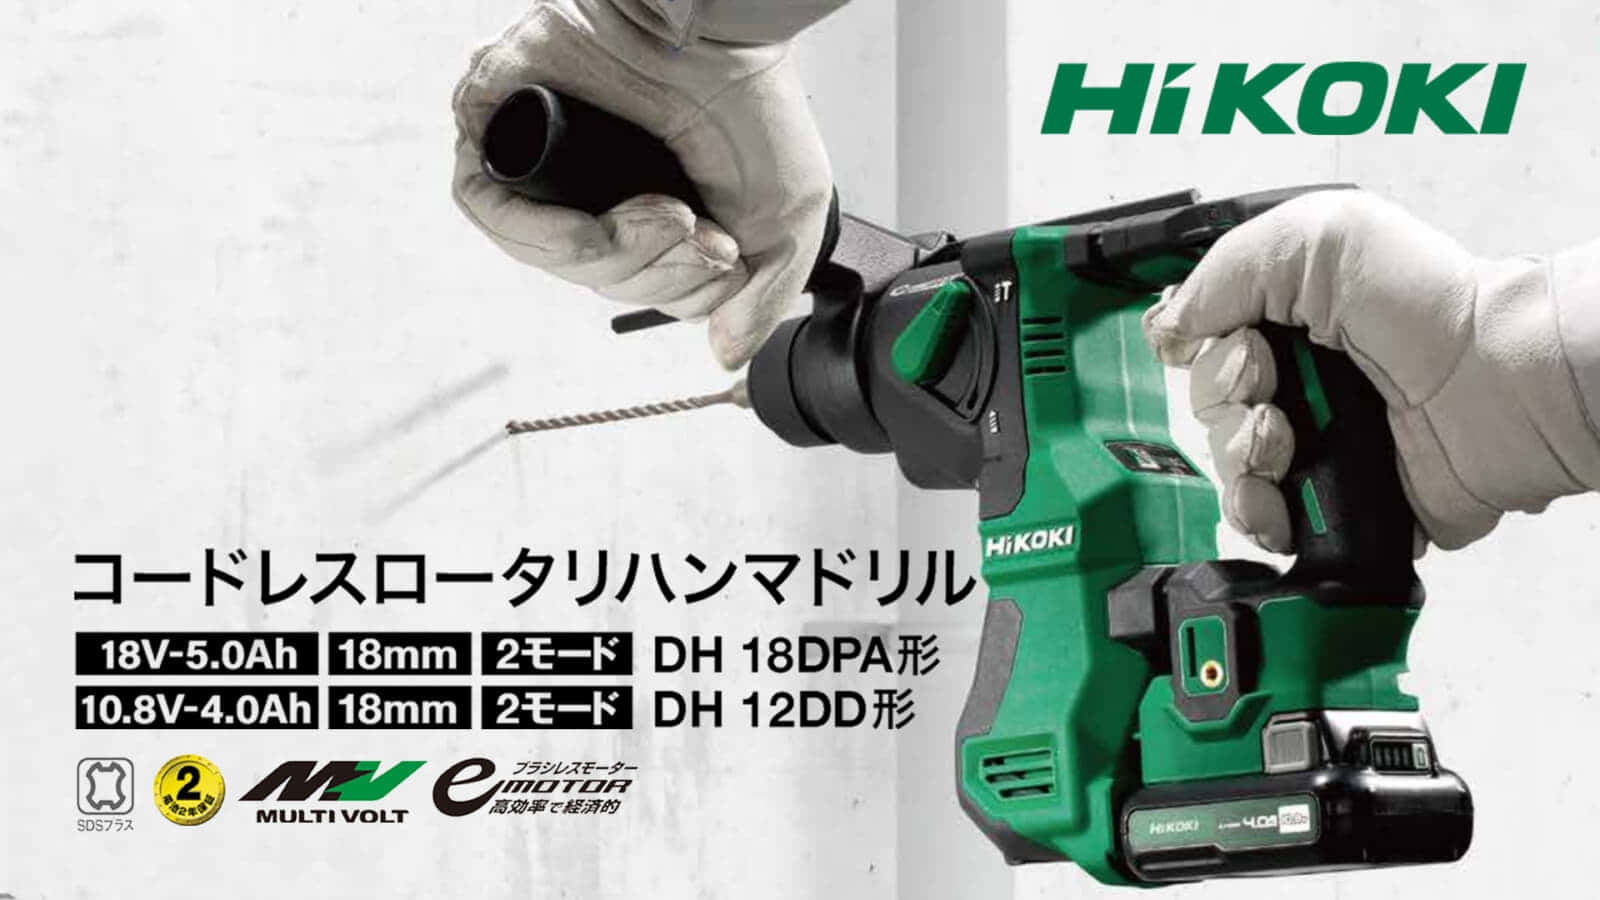 HiKOKI DH18DPA/DH12DD ミドルクラスのコンパクトハンマドリルを発売 ｜ VOLTECHNO